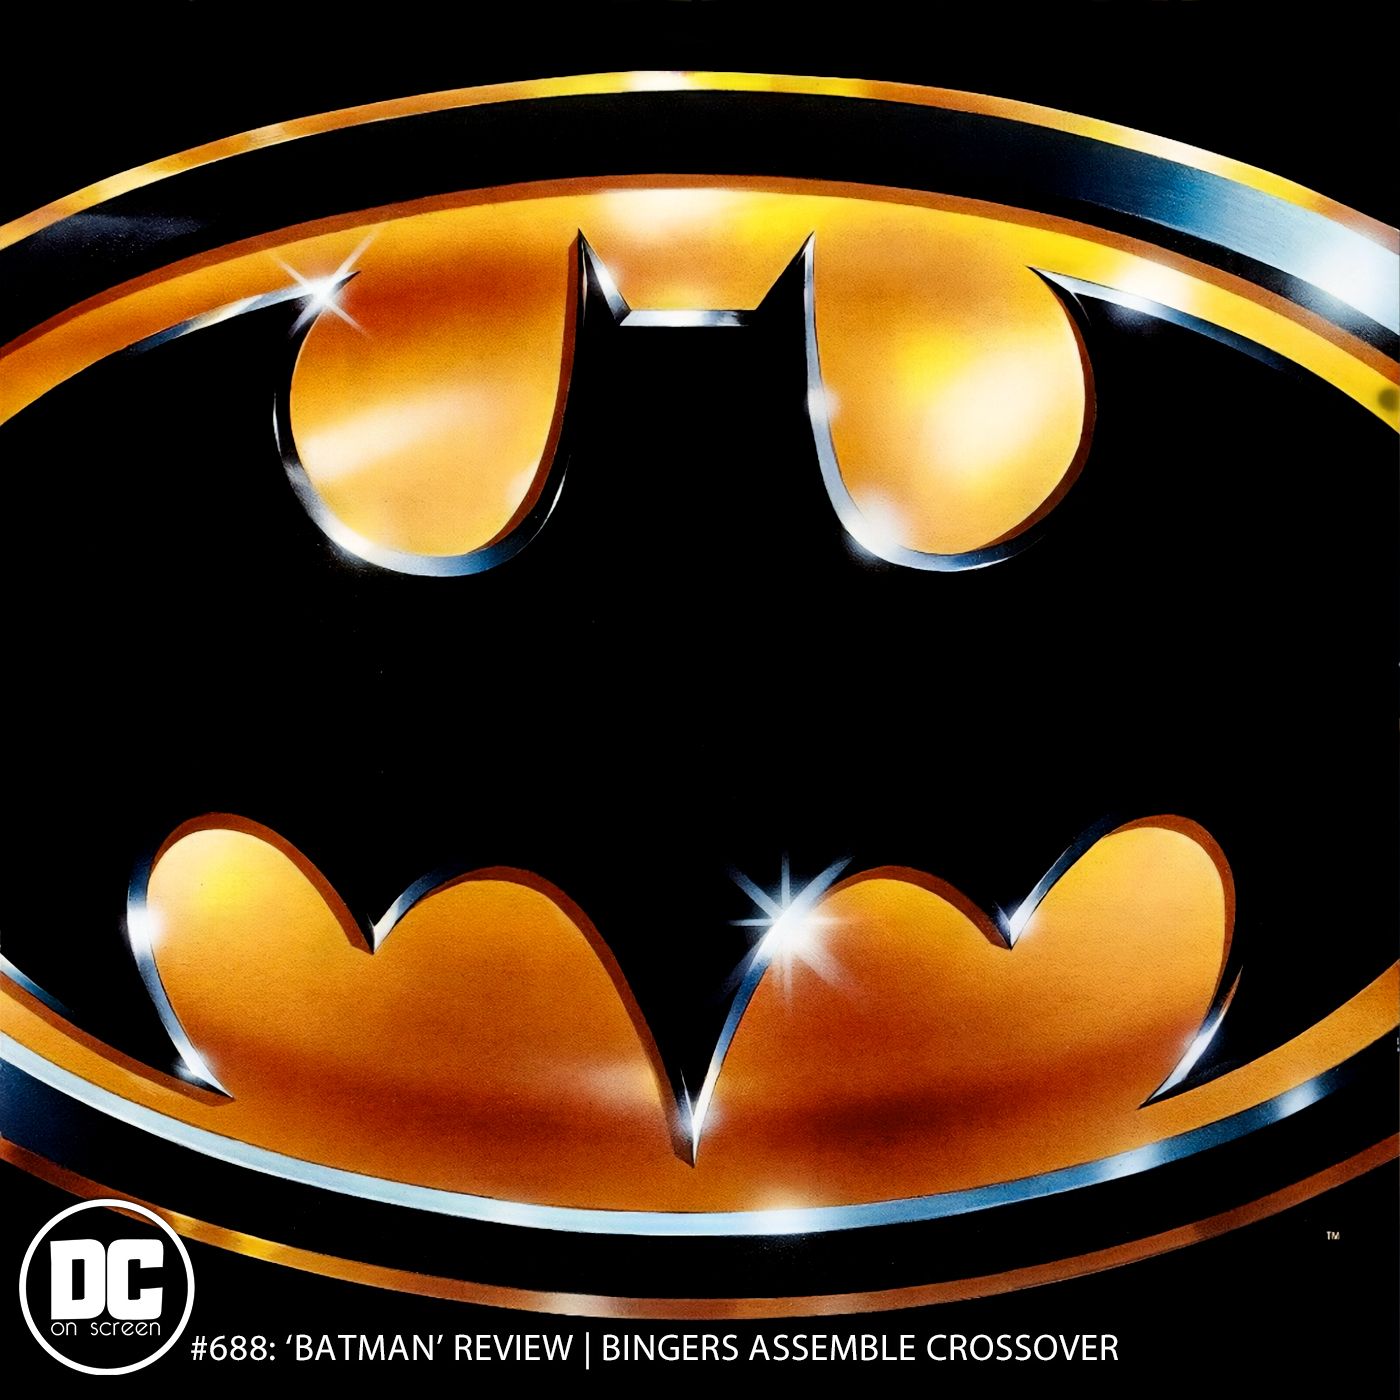 ’Batman’ Review | Bingers Assemble Crossover